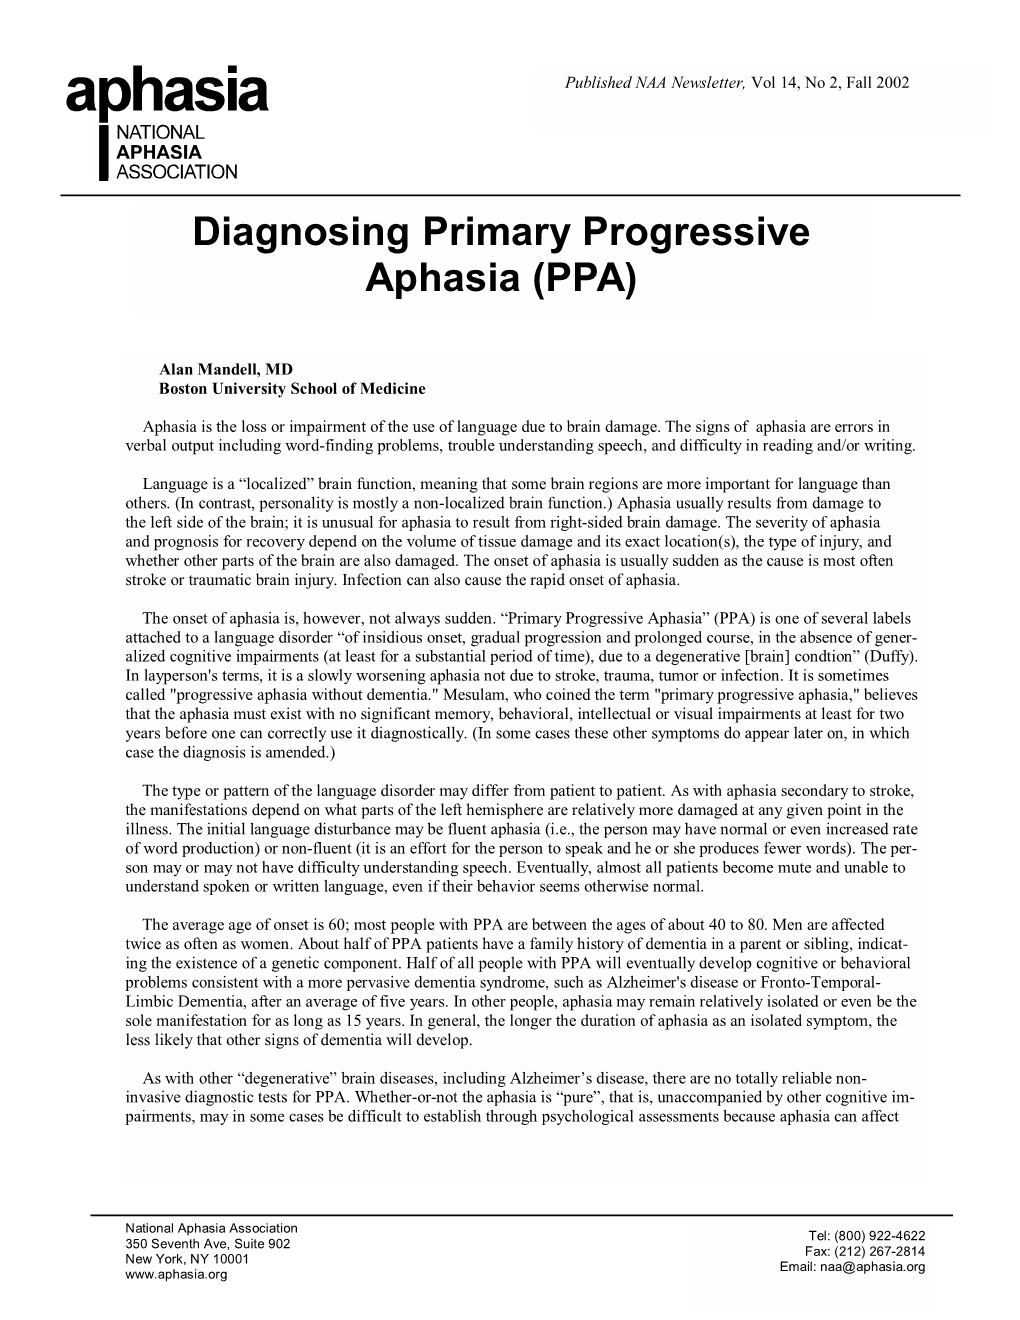 Diagnosing Primary Progressive Aphasia (PPA)